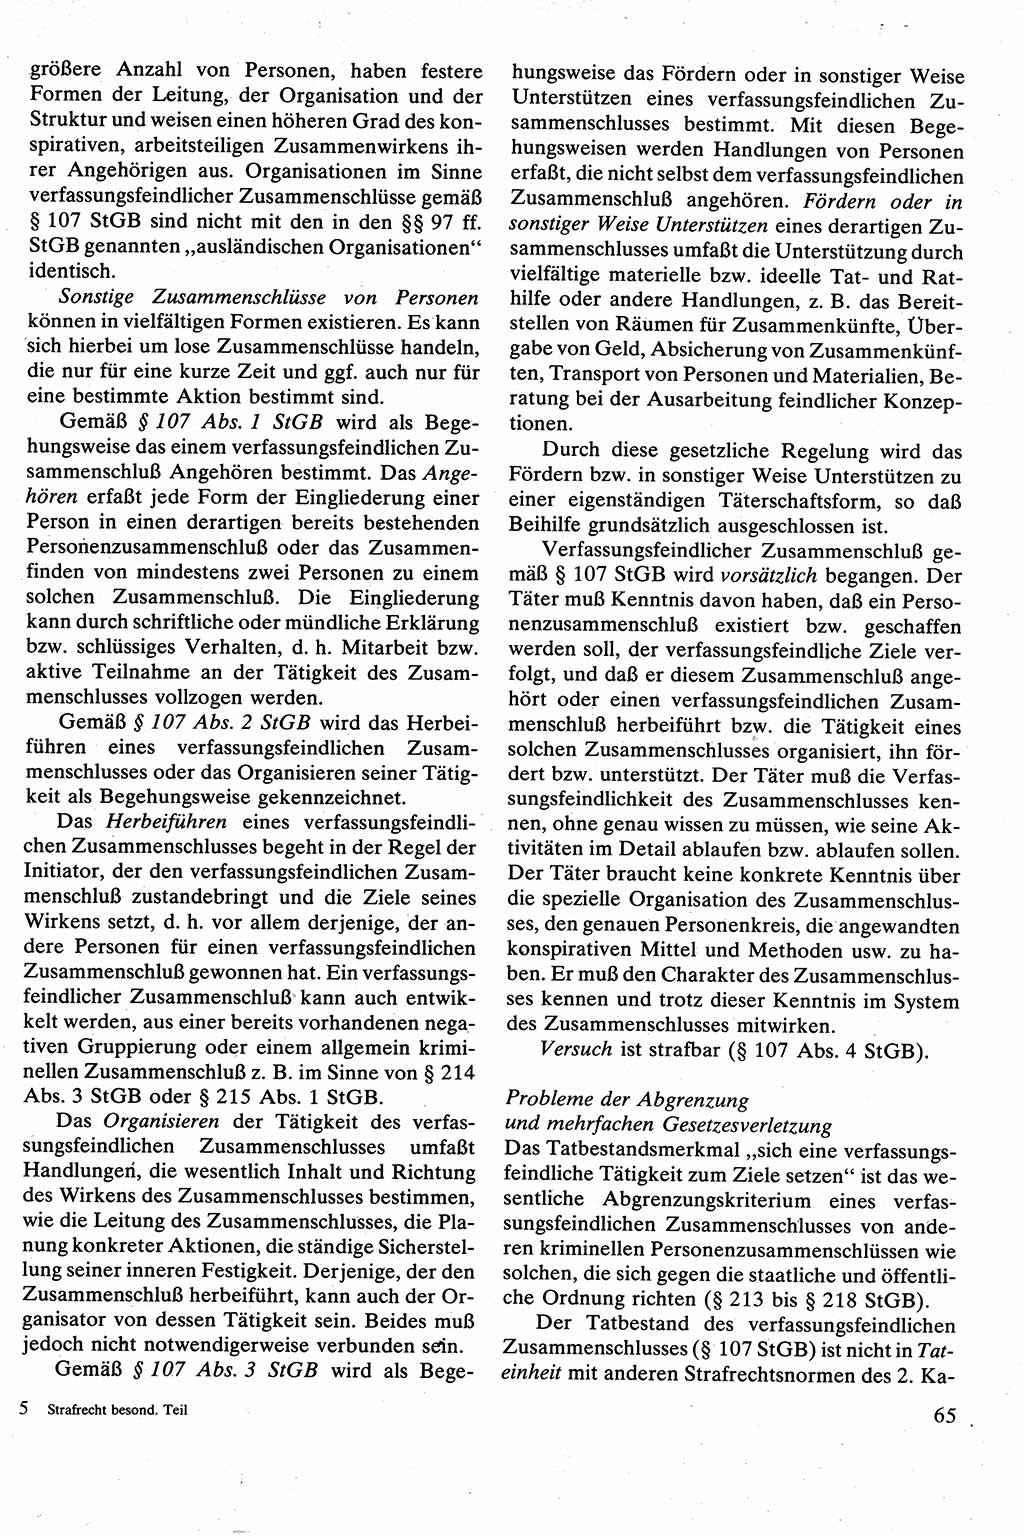 Strafrecht [Deutsche Demokratische Republik (DDR)], Besonderer Teil, Lehrbuch 1981, Seite 65 (Strafr. DDR BT Lb. 1981, S. 65)